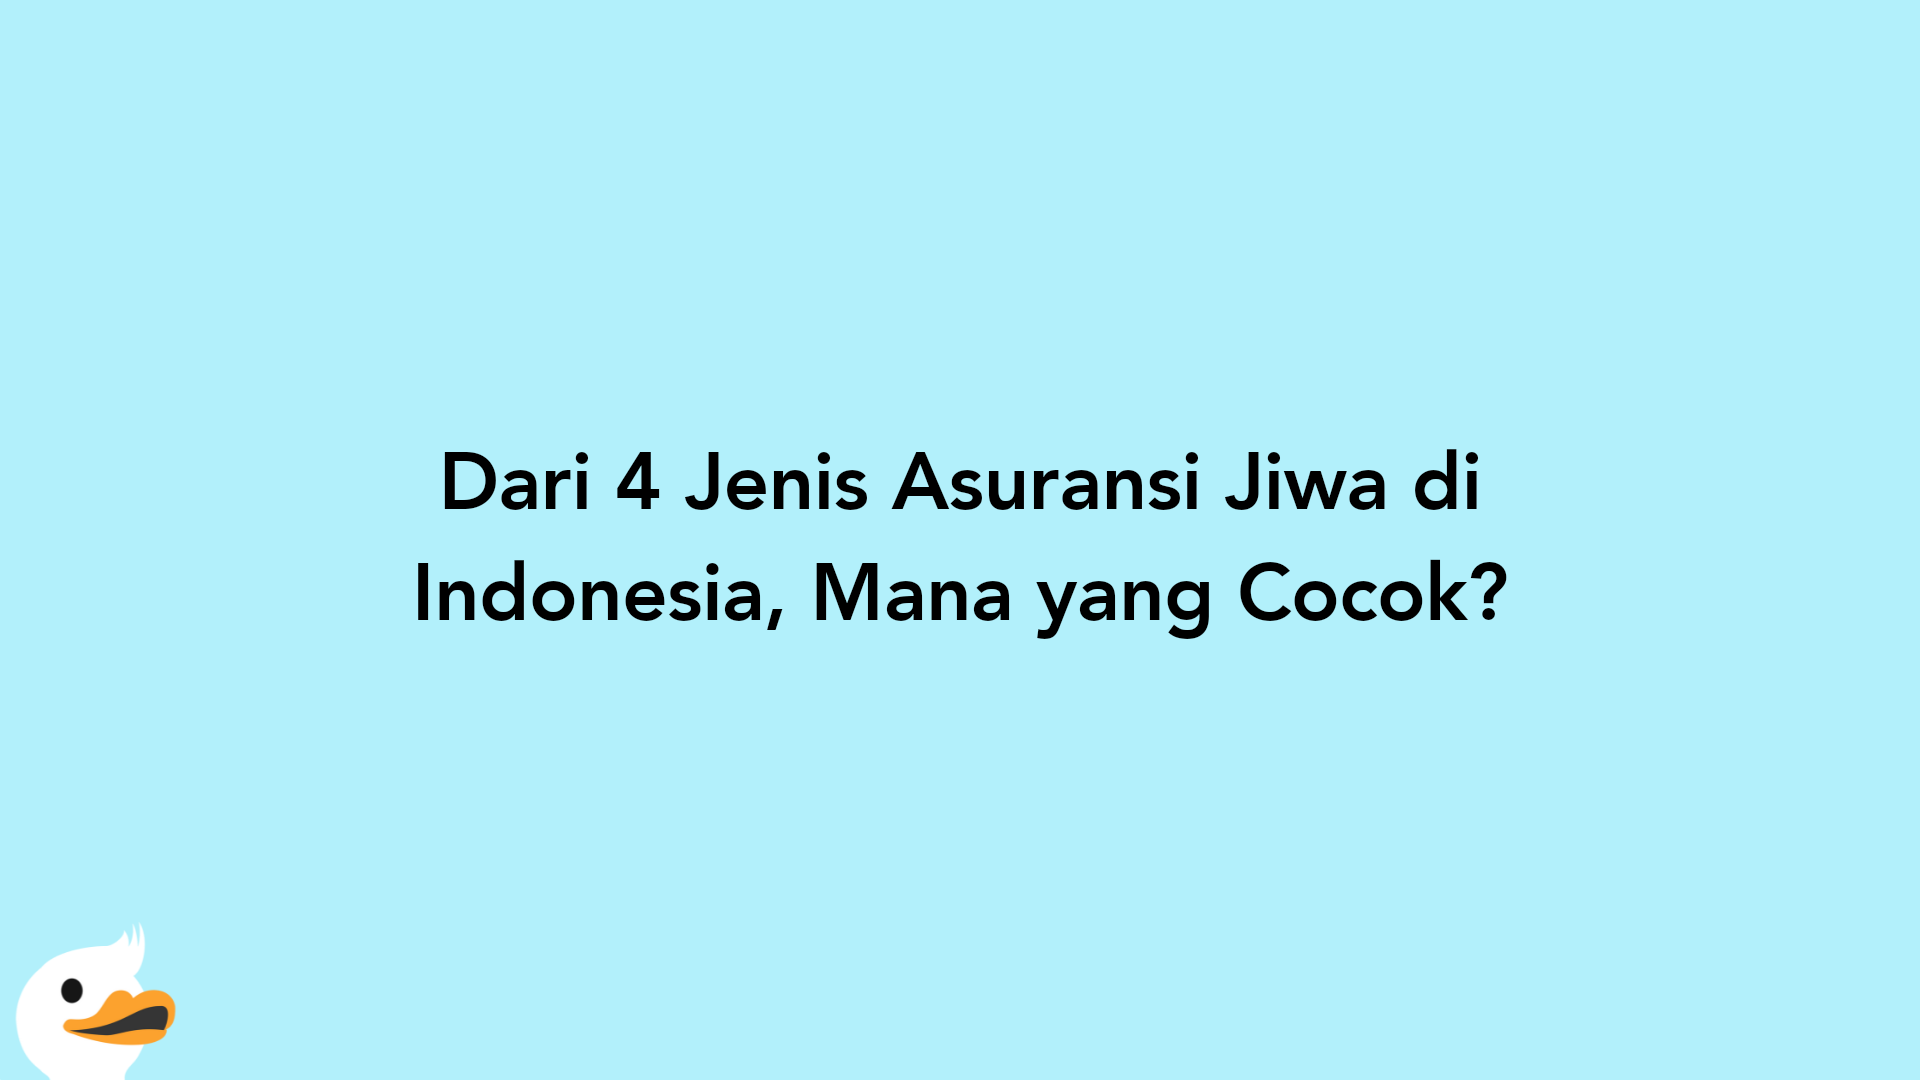 Dari 4 Jenis Asuransi Jiwa di Indonesia, Mana yang Cocok?